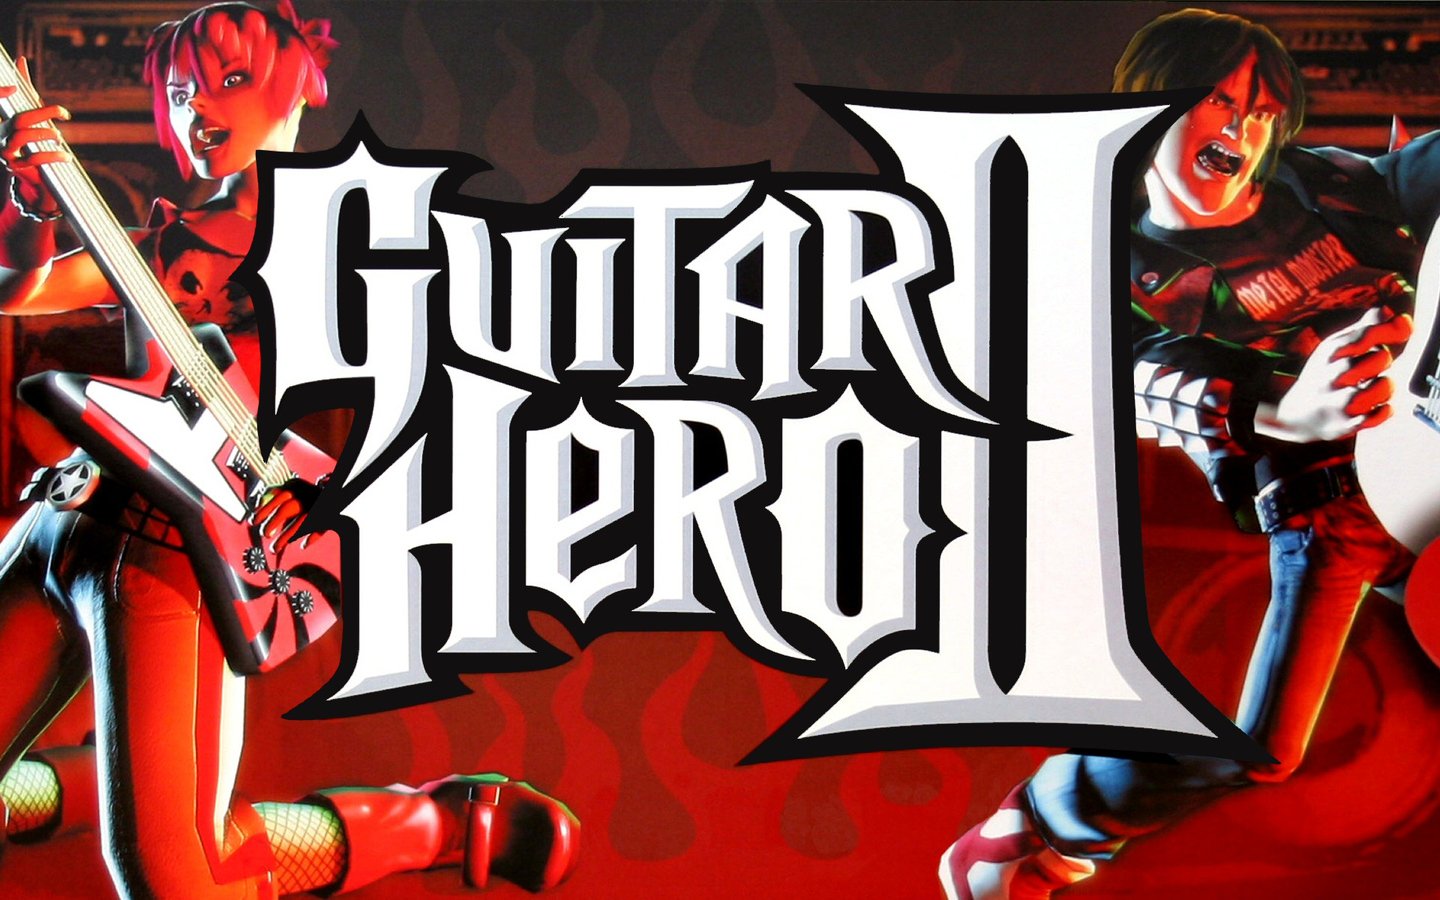 Terugkijkend op 2007 en de Xbox-versie van Guitar Hero II